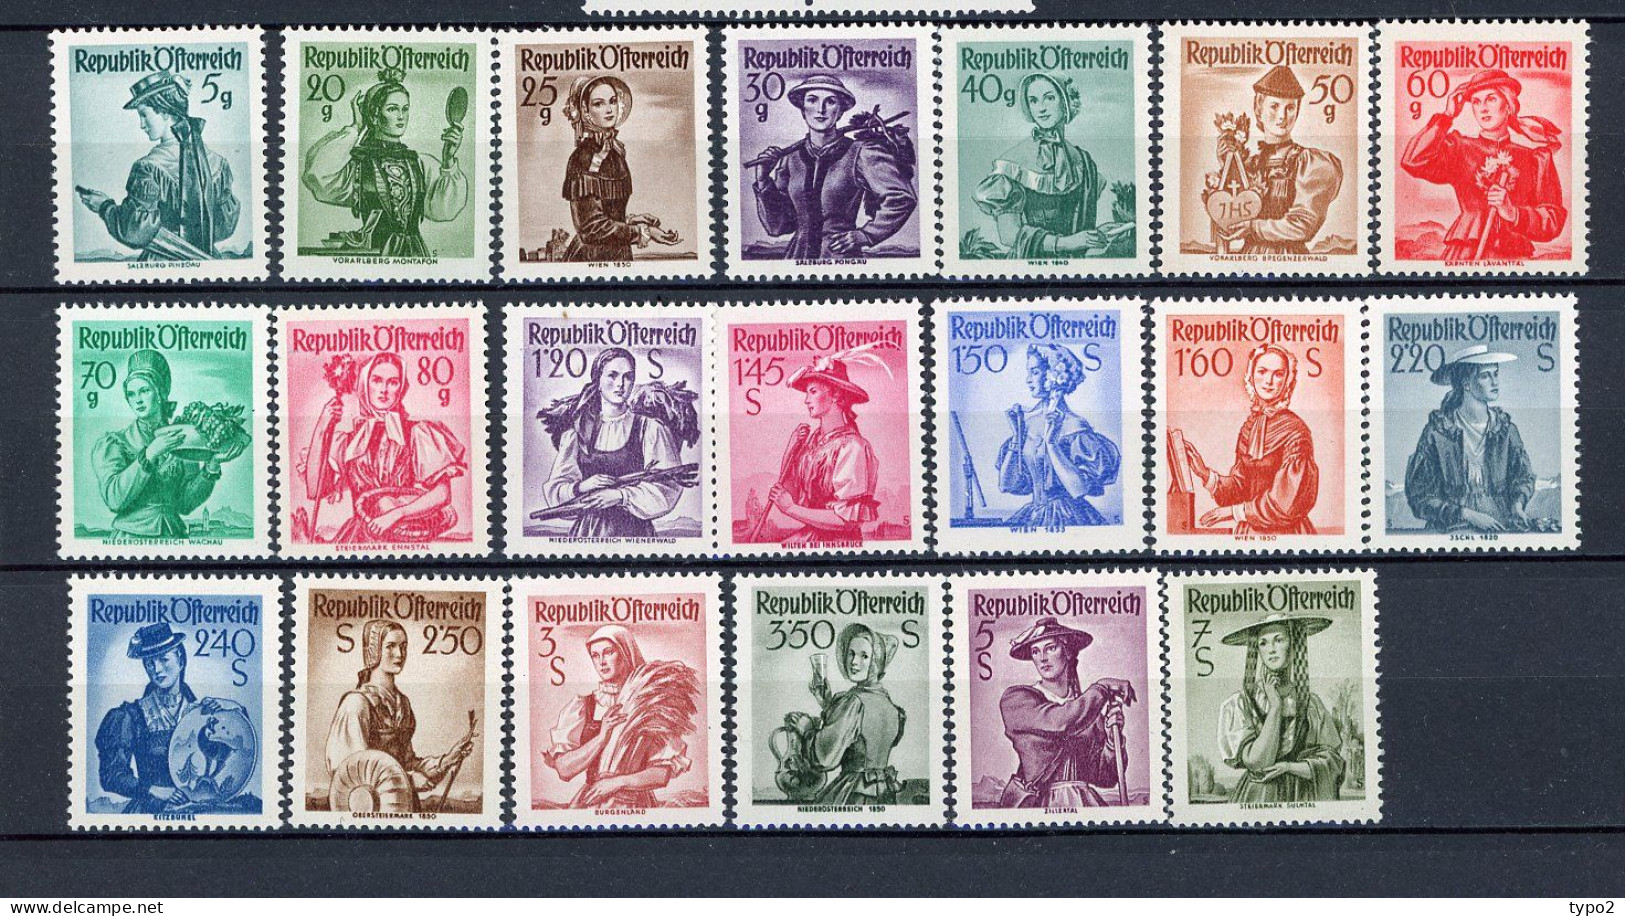 AUTRICHE - 1958  Yv. N° 882 à 900A, Sauf 883 (10g) X 4 Papier Blanc  *  Régions Cote  25 Euro  TBE 2 Scans - Unused Stamps